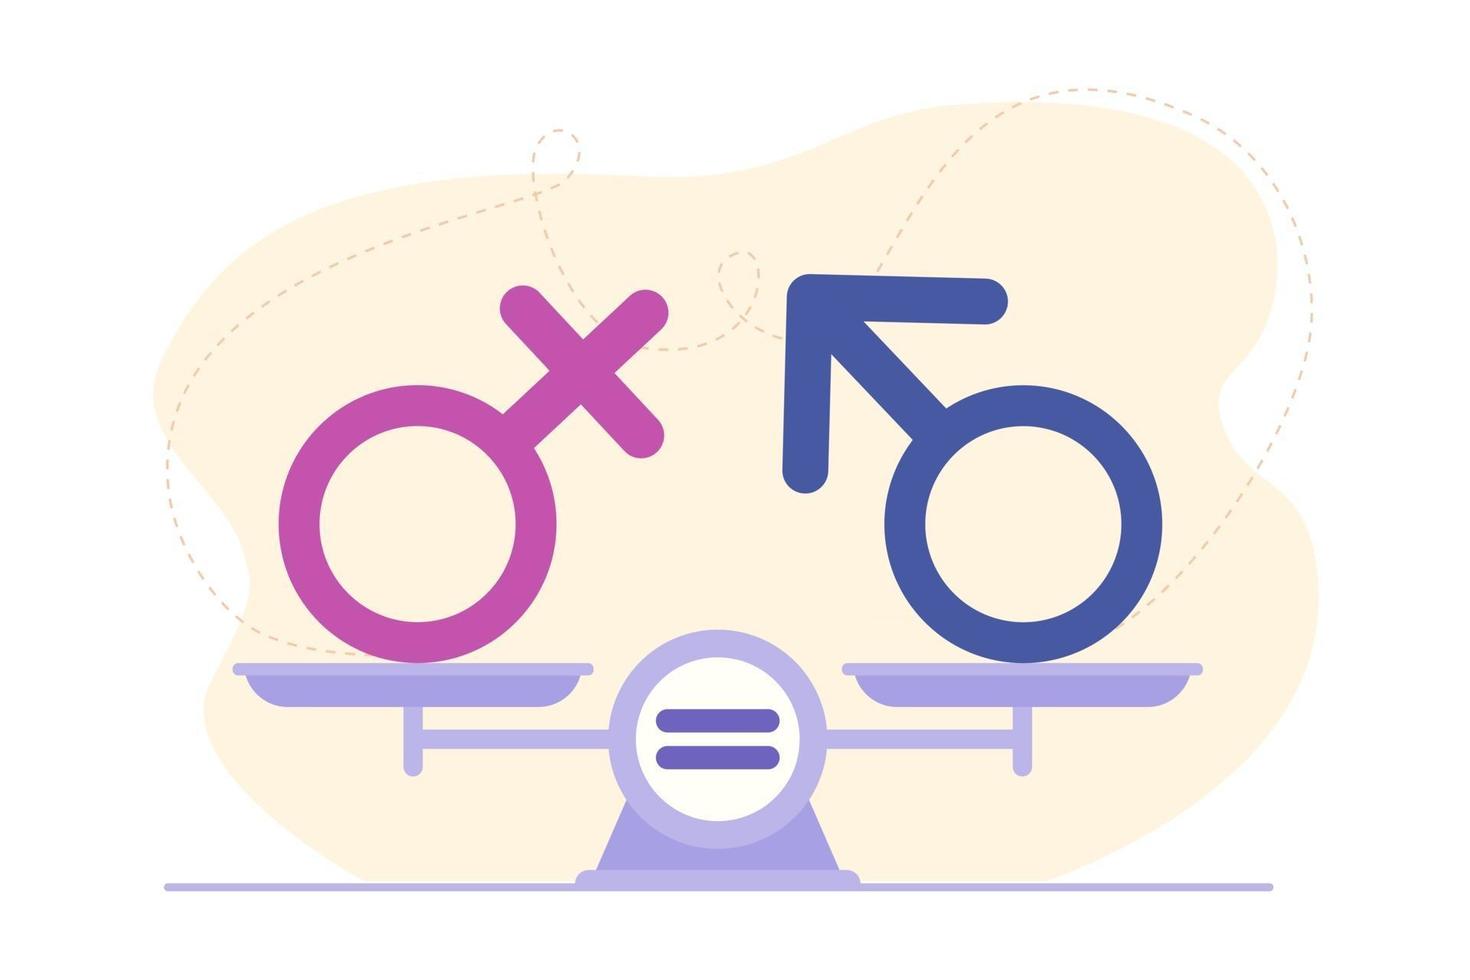 gendergelijkheid concept. mannelijk en vrouwelijk geslachtsteken op schalen. symbool van vertrouwen, teamwork, succes en prestatie. platte cartoon stijl illustratie. ontwerp voor bestemmingspagina, web, flyer vector